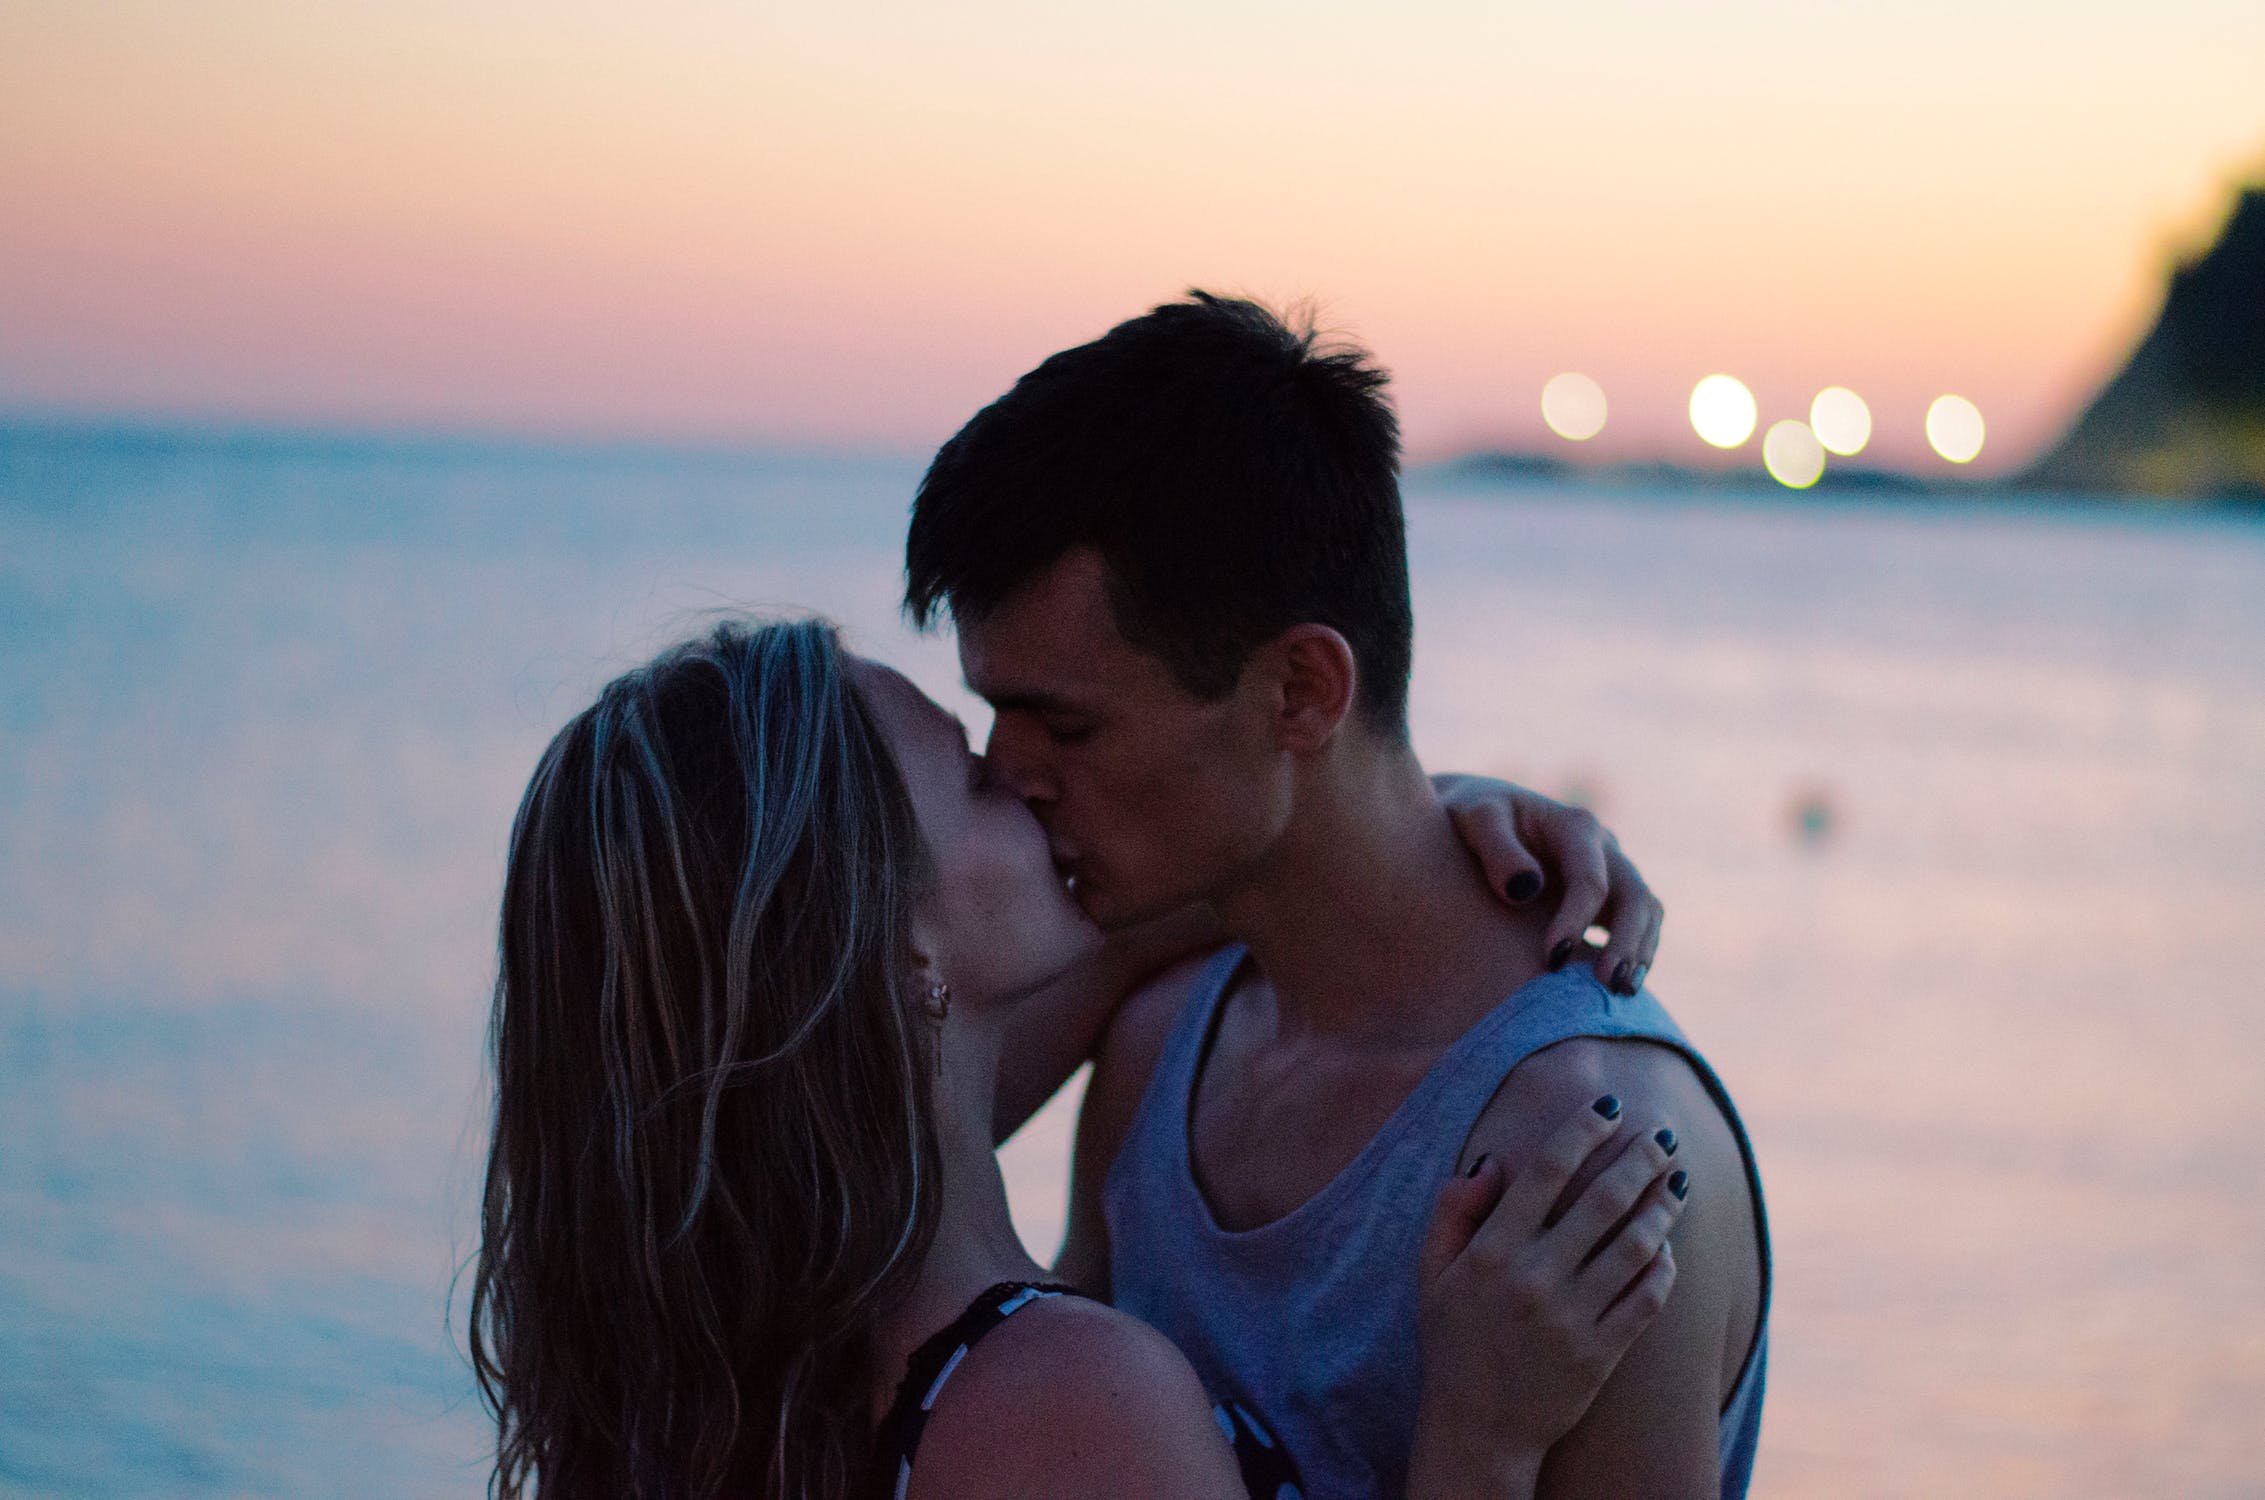 Pareja besándose apasionadamente frente al mar en el atardecer. | Imagen: Pexels